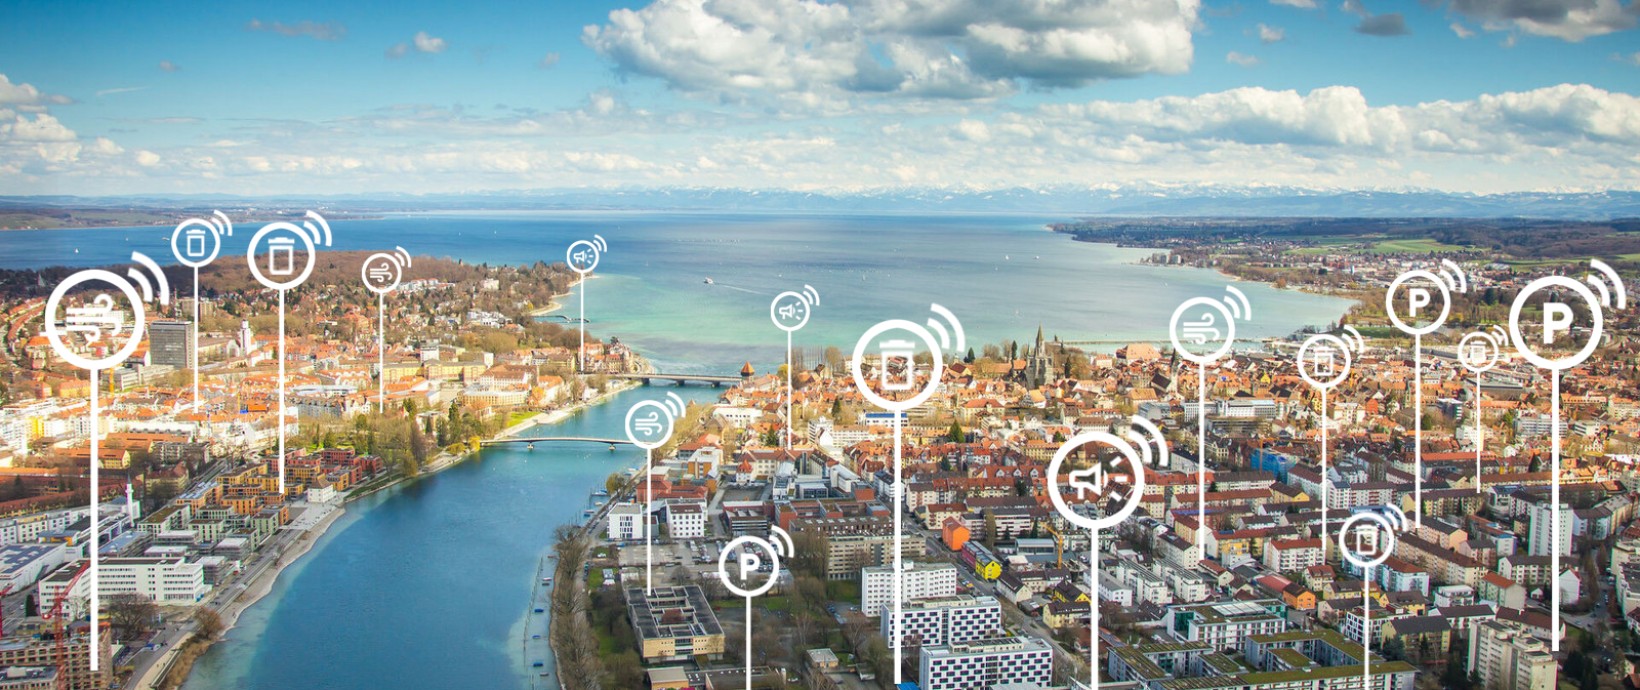 Hafen Konstanz mit vernetzten Icons